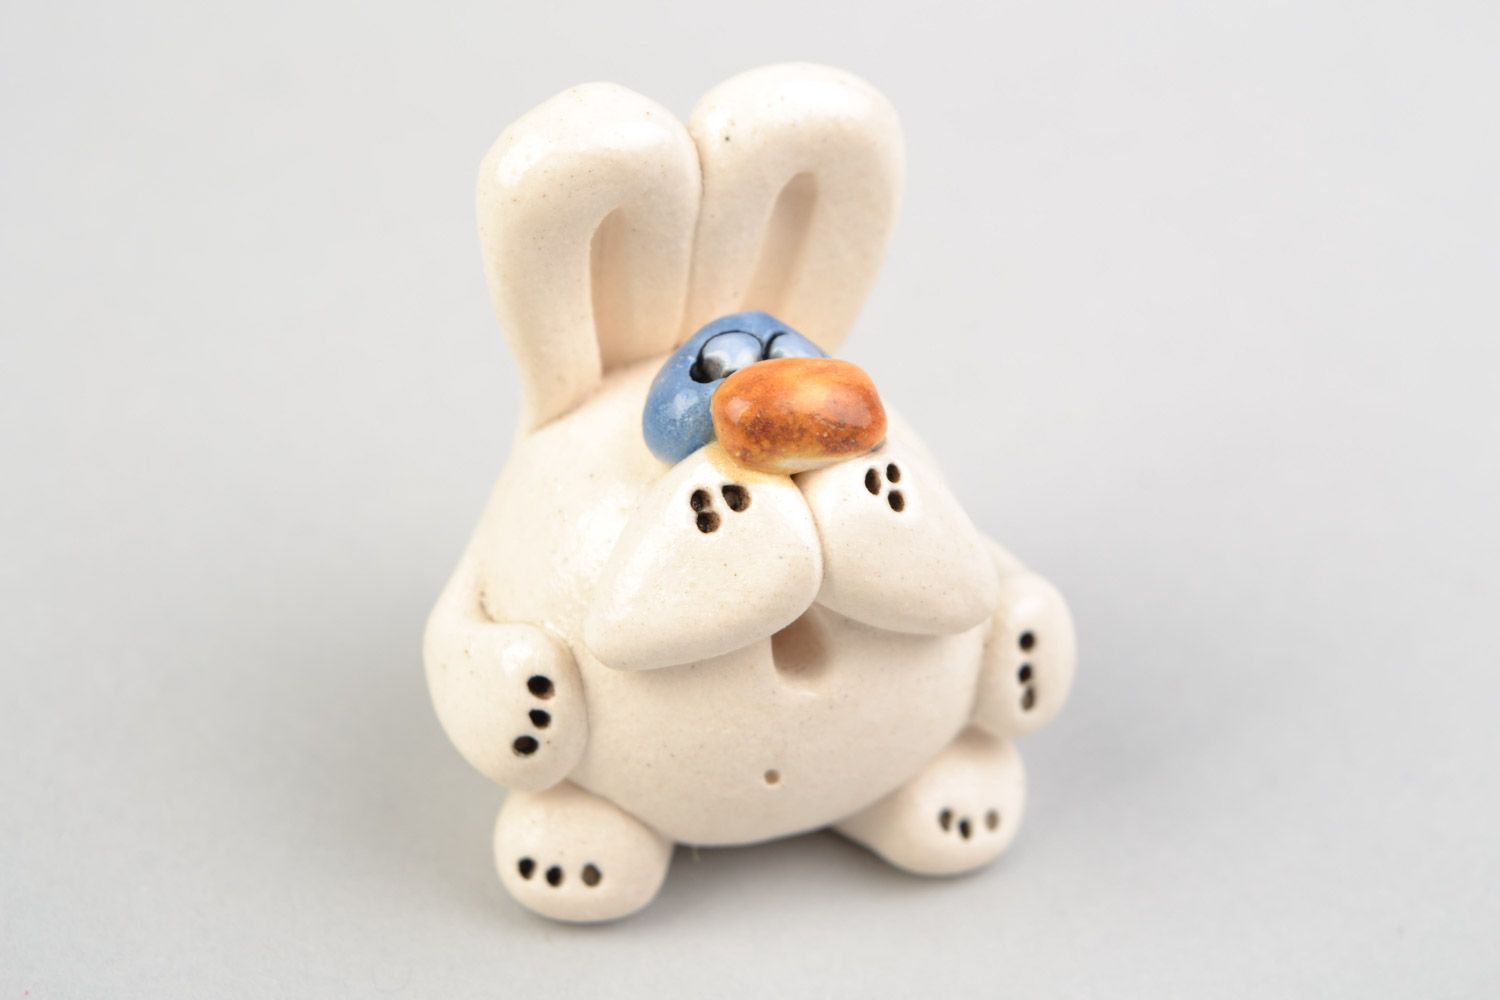 Авторская расписанная глазурью глиняная фигурка кролика малыша ручной работы фото 1